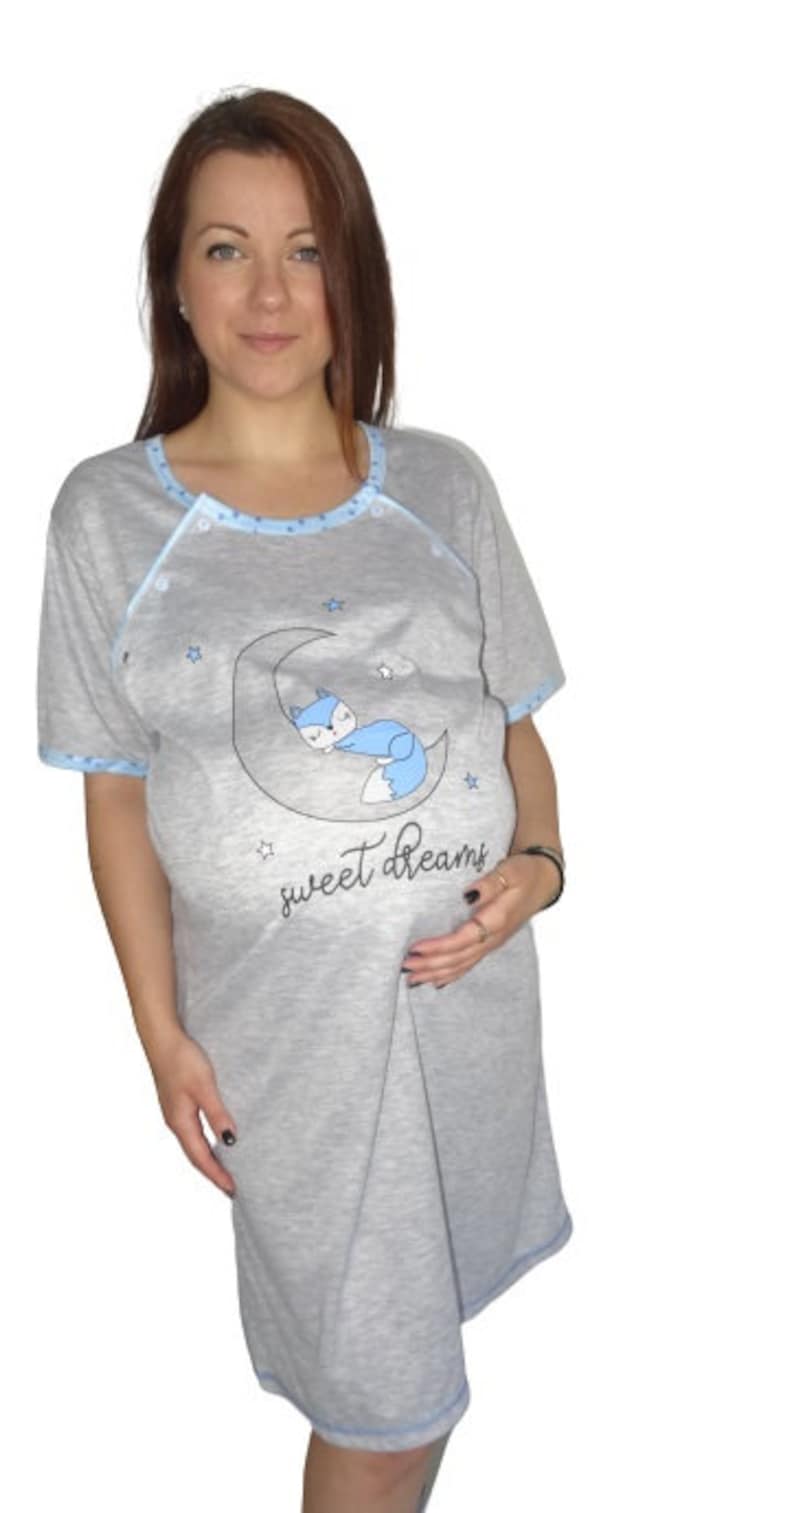 937 Birth Gown Maternity Breastfeeding Nightdress Pregnancy Nursing Nightwear Blue